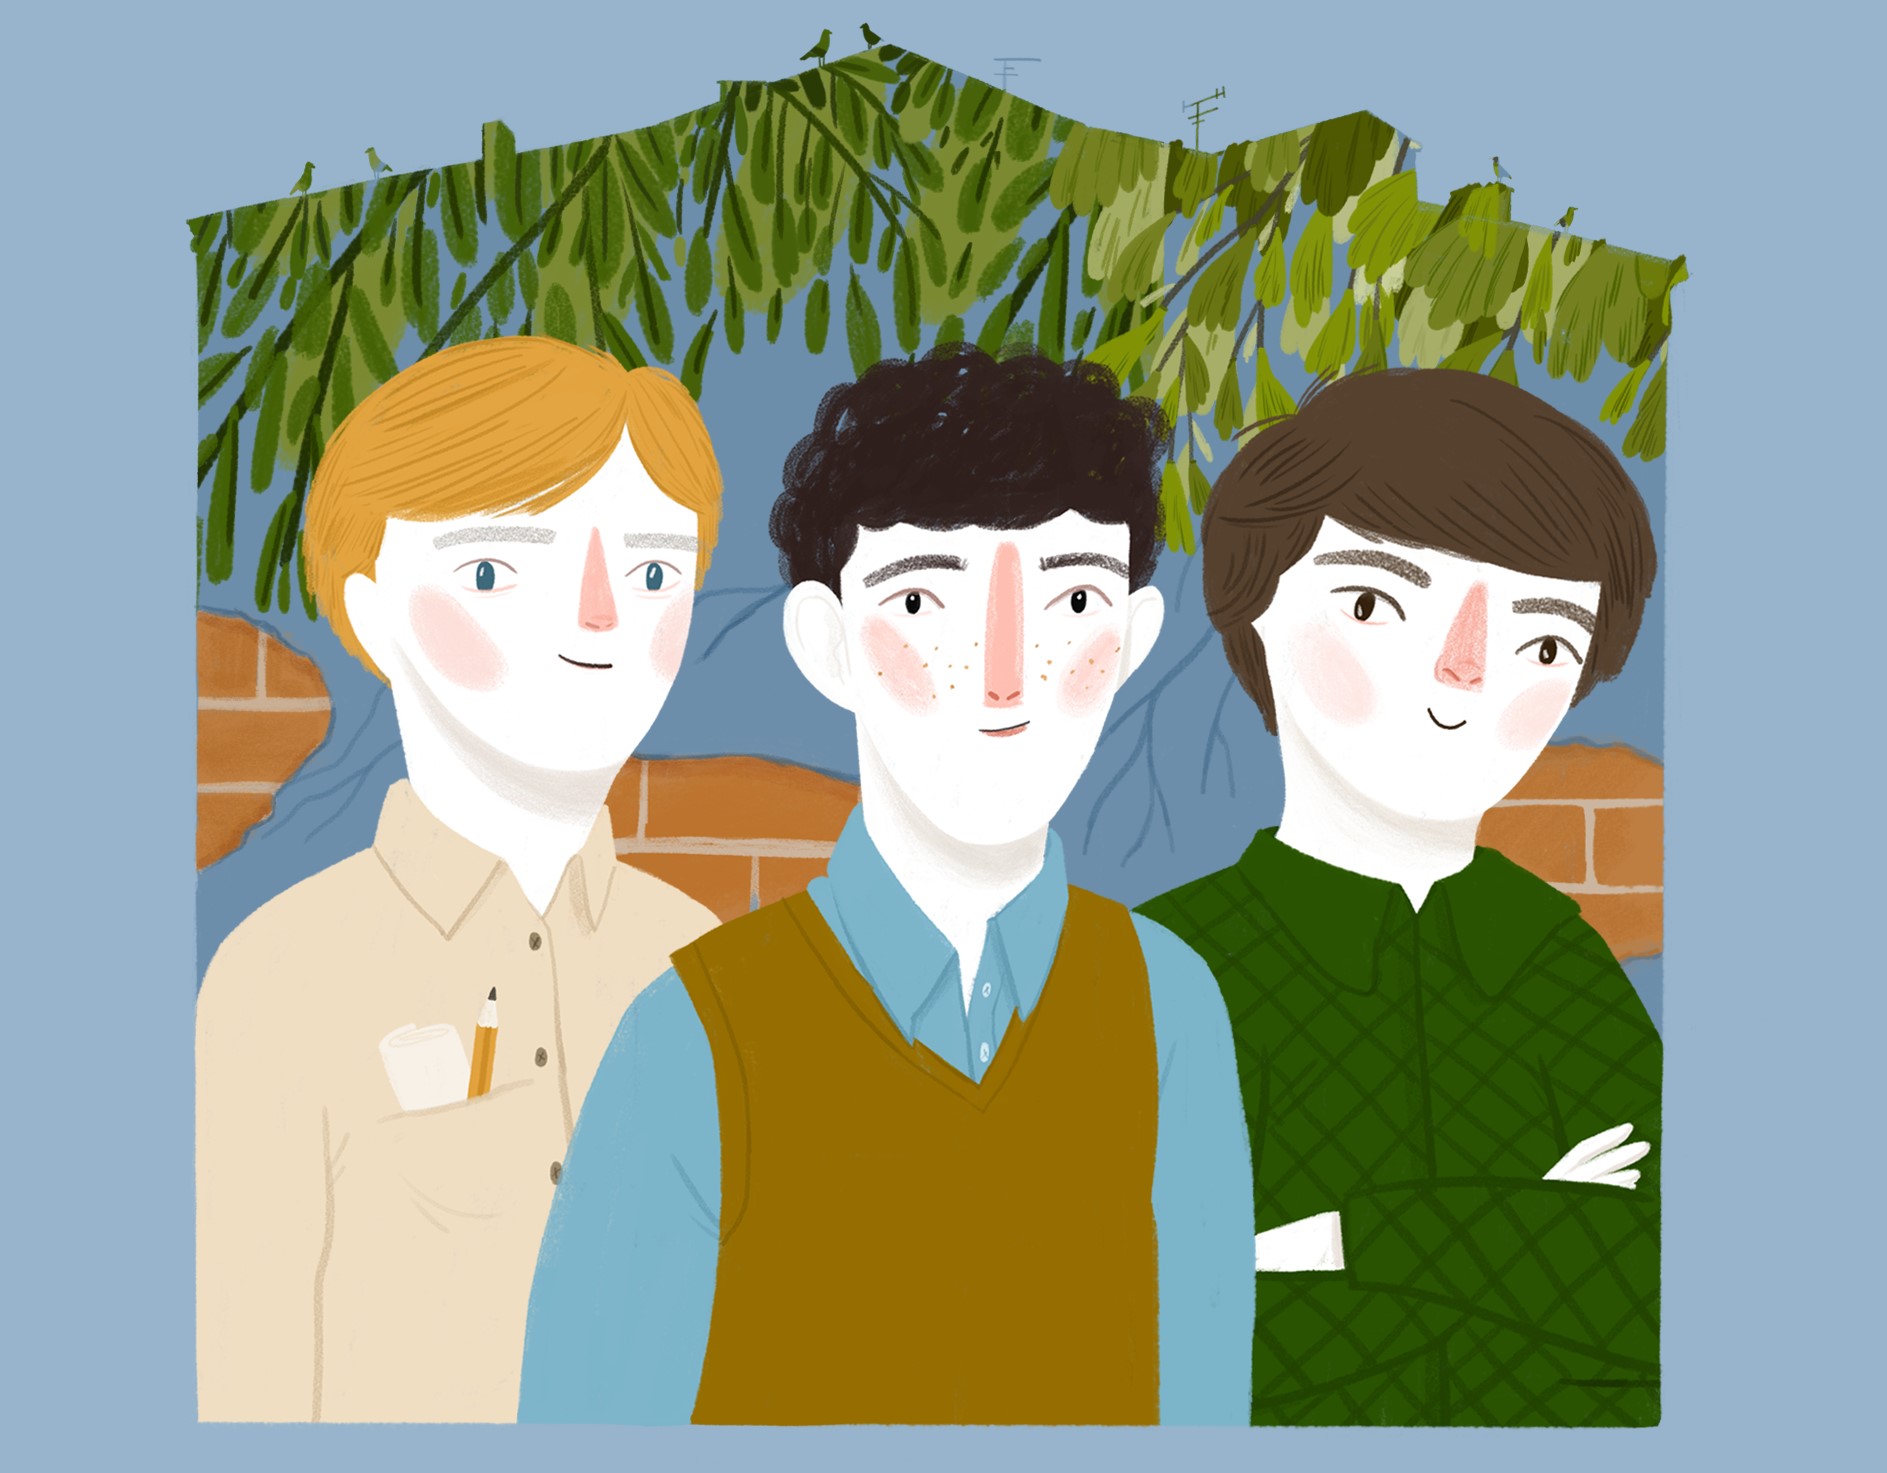 Trzej chłopcy, rudo-, czarno- i brązowowłosy, stoją obok siebie. Nad nimi wiszą zielone gałązki.